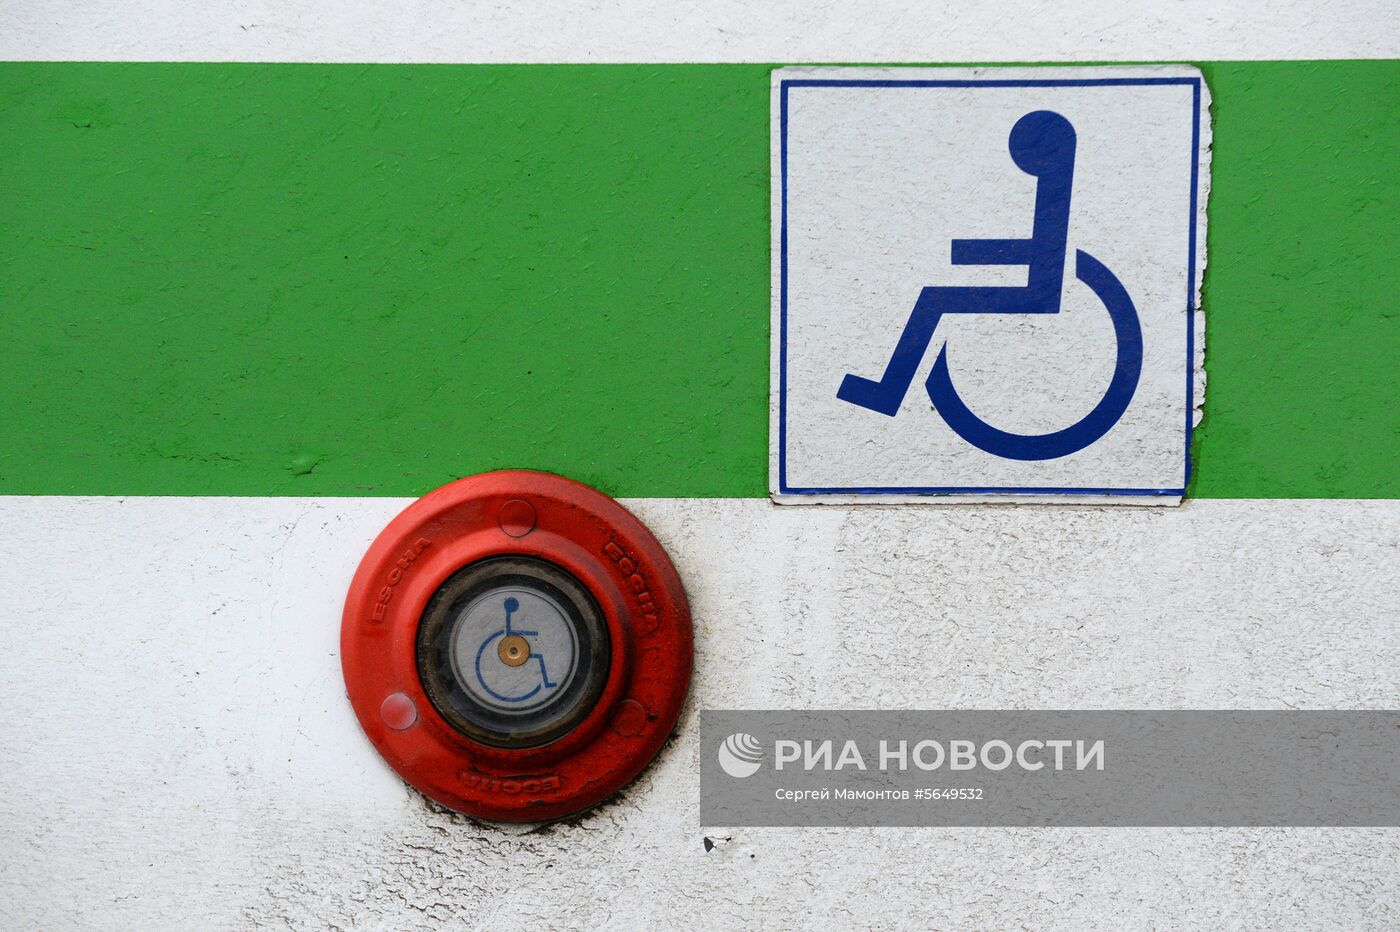 Минтруд опроверг сообщения о планах отказаться от термина "инвалид"